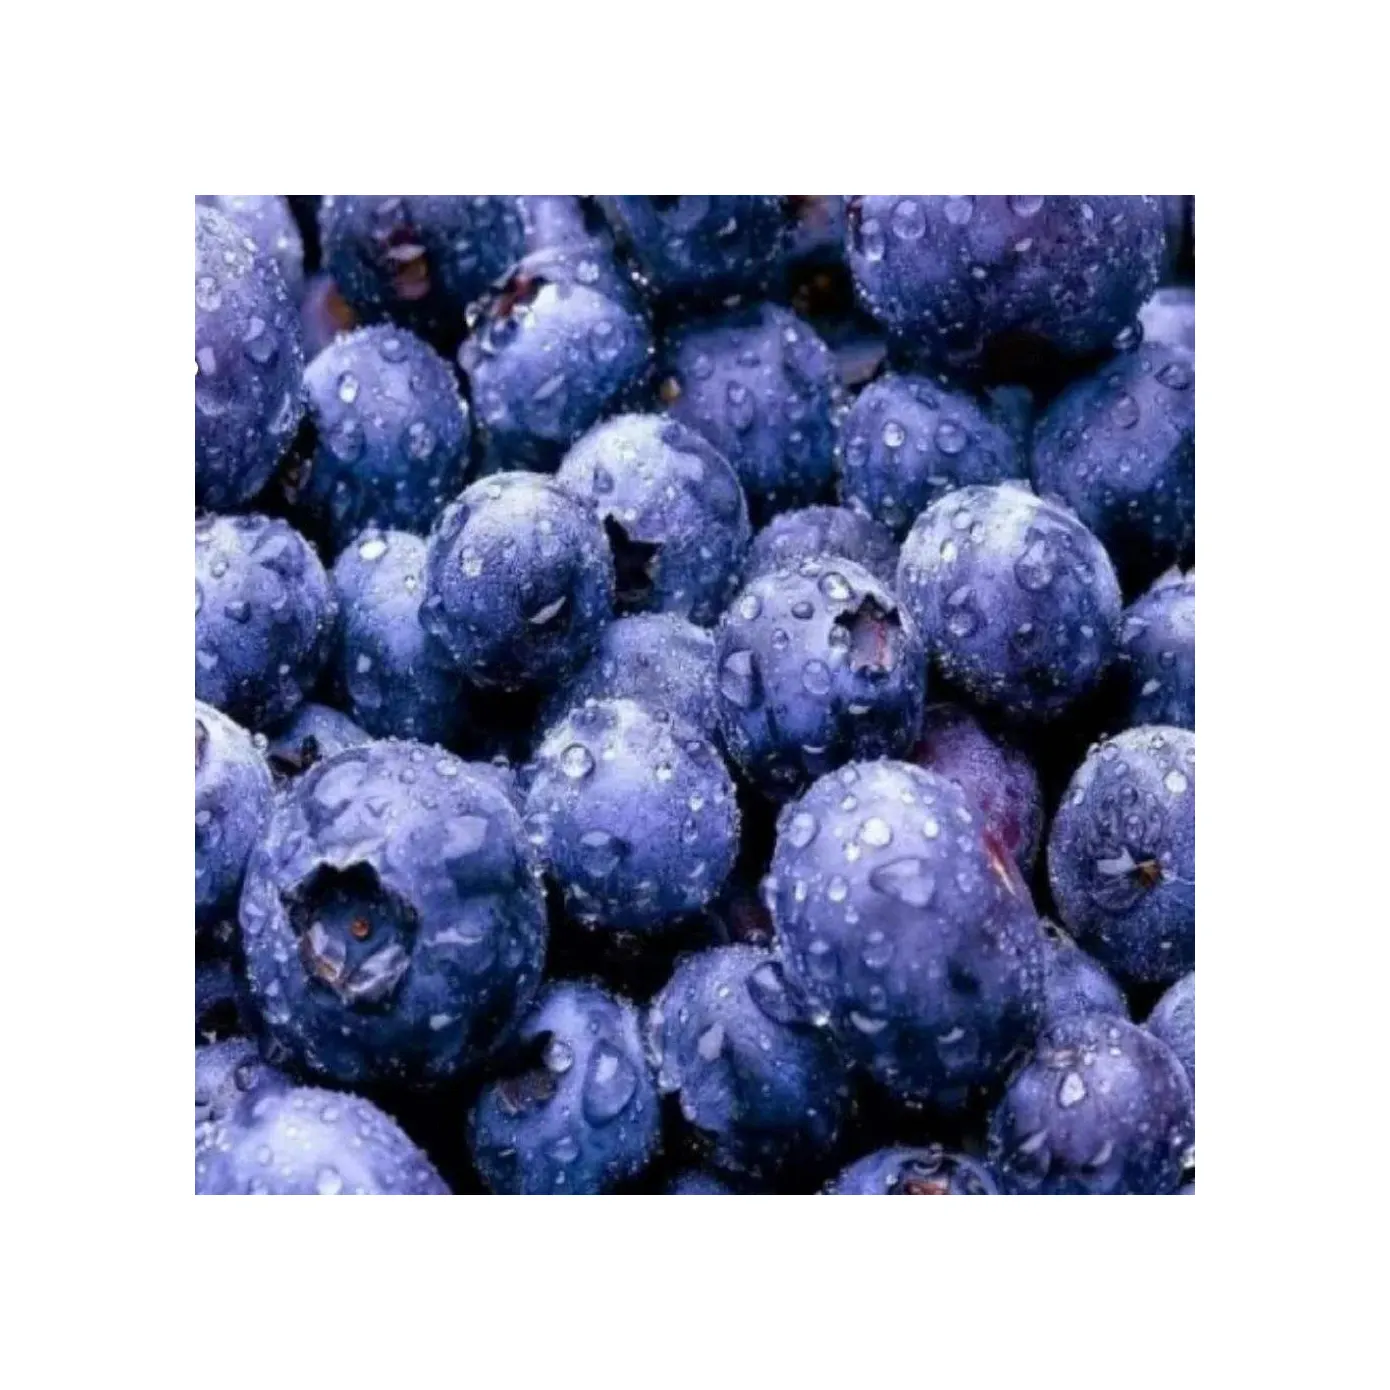 블루 베리 냉동 부드럽고 깨지기 쉬운 딸기 도매 블루 베리의 맛과 구조를 보존